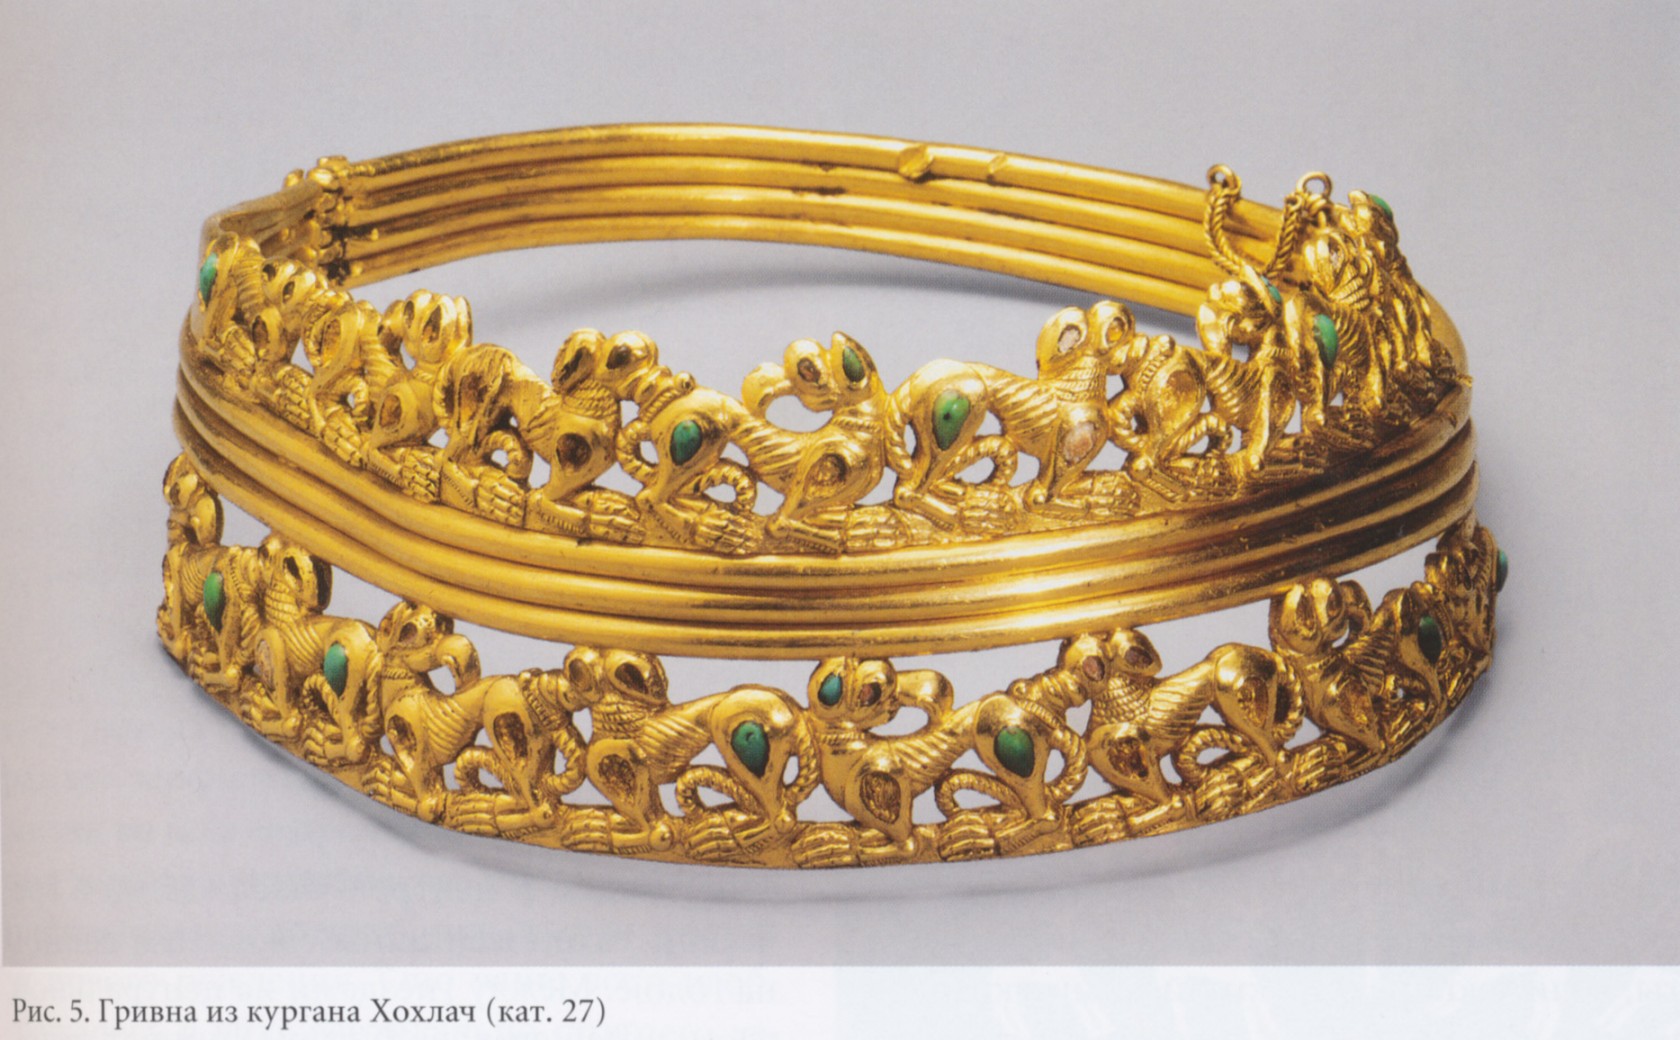 Гривна из кургана Хохлач в бирюзово-золотом стиле